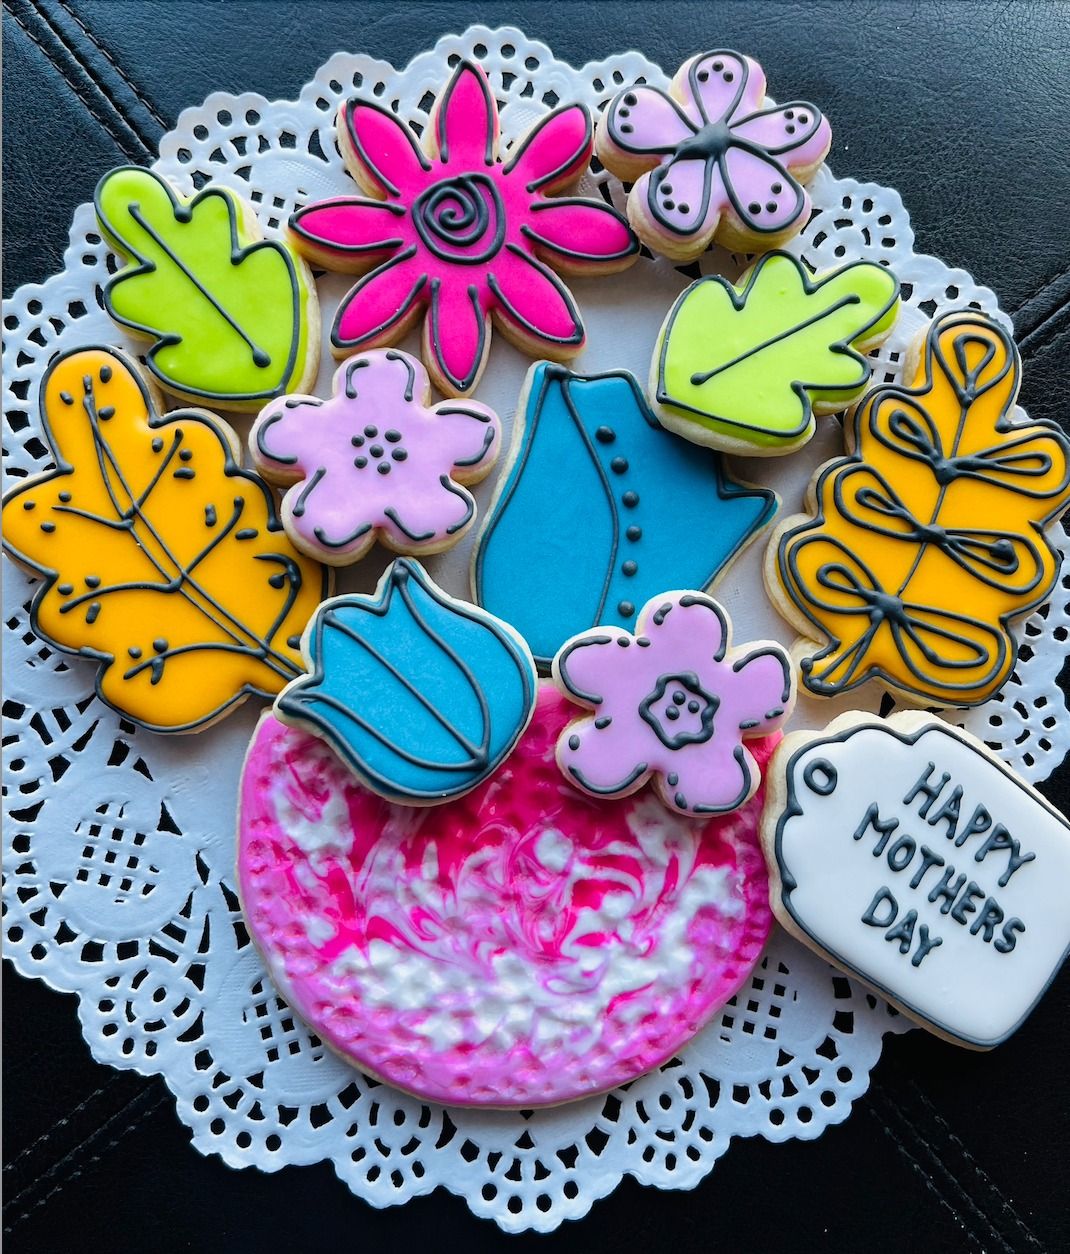 Spring Floral "Cartoon" Cookie Decorating Workshop